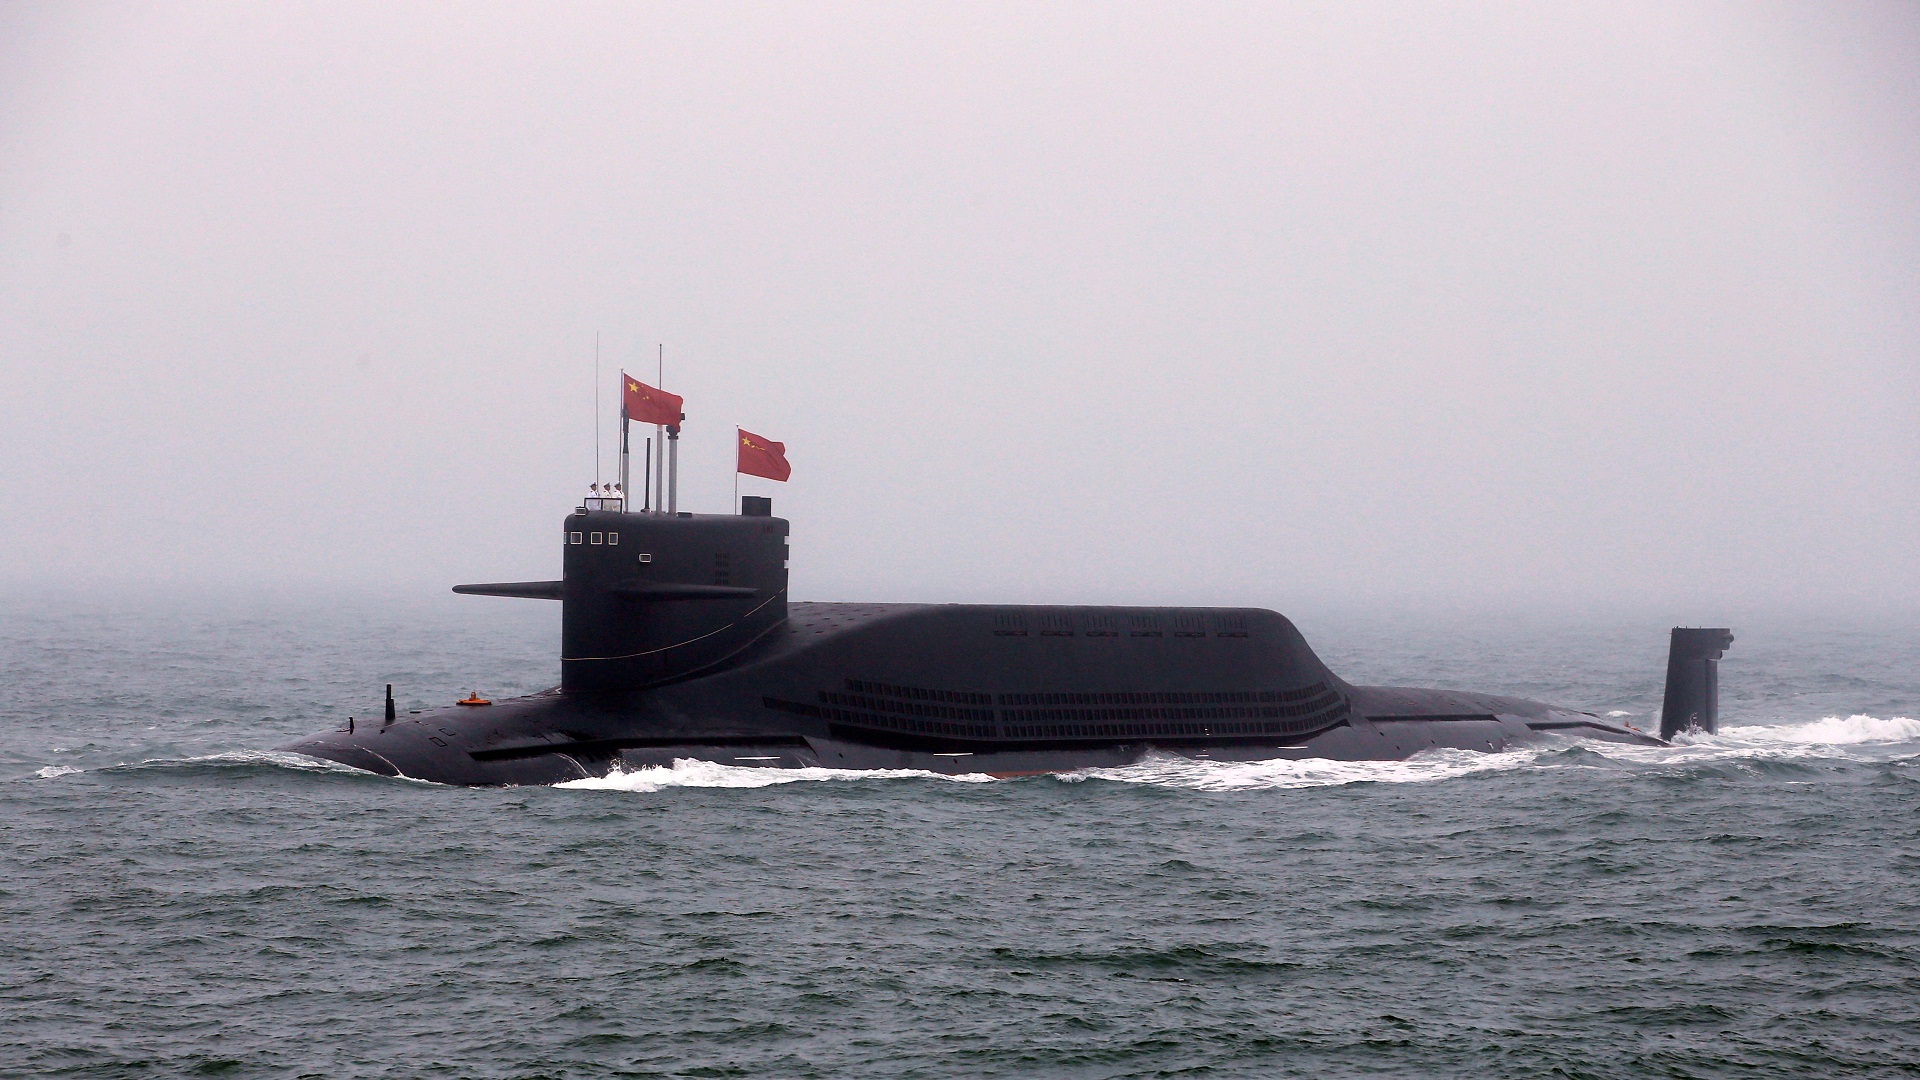 Όταν πέφτεις στο λάκκο που έσκαψες για τους άλλους: Το κινεζικό ναυτικό «βύθισε κατά λάθος δικό του πυρηνοκίνητο υποβρύχιο»